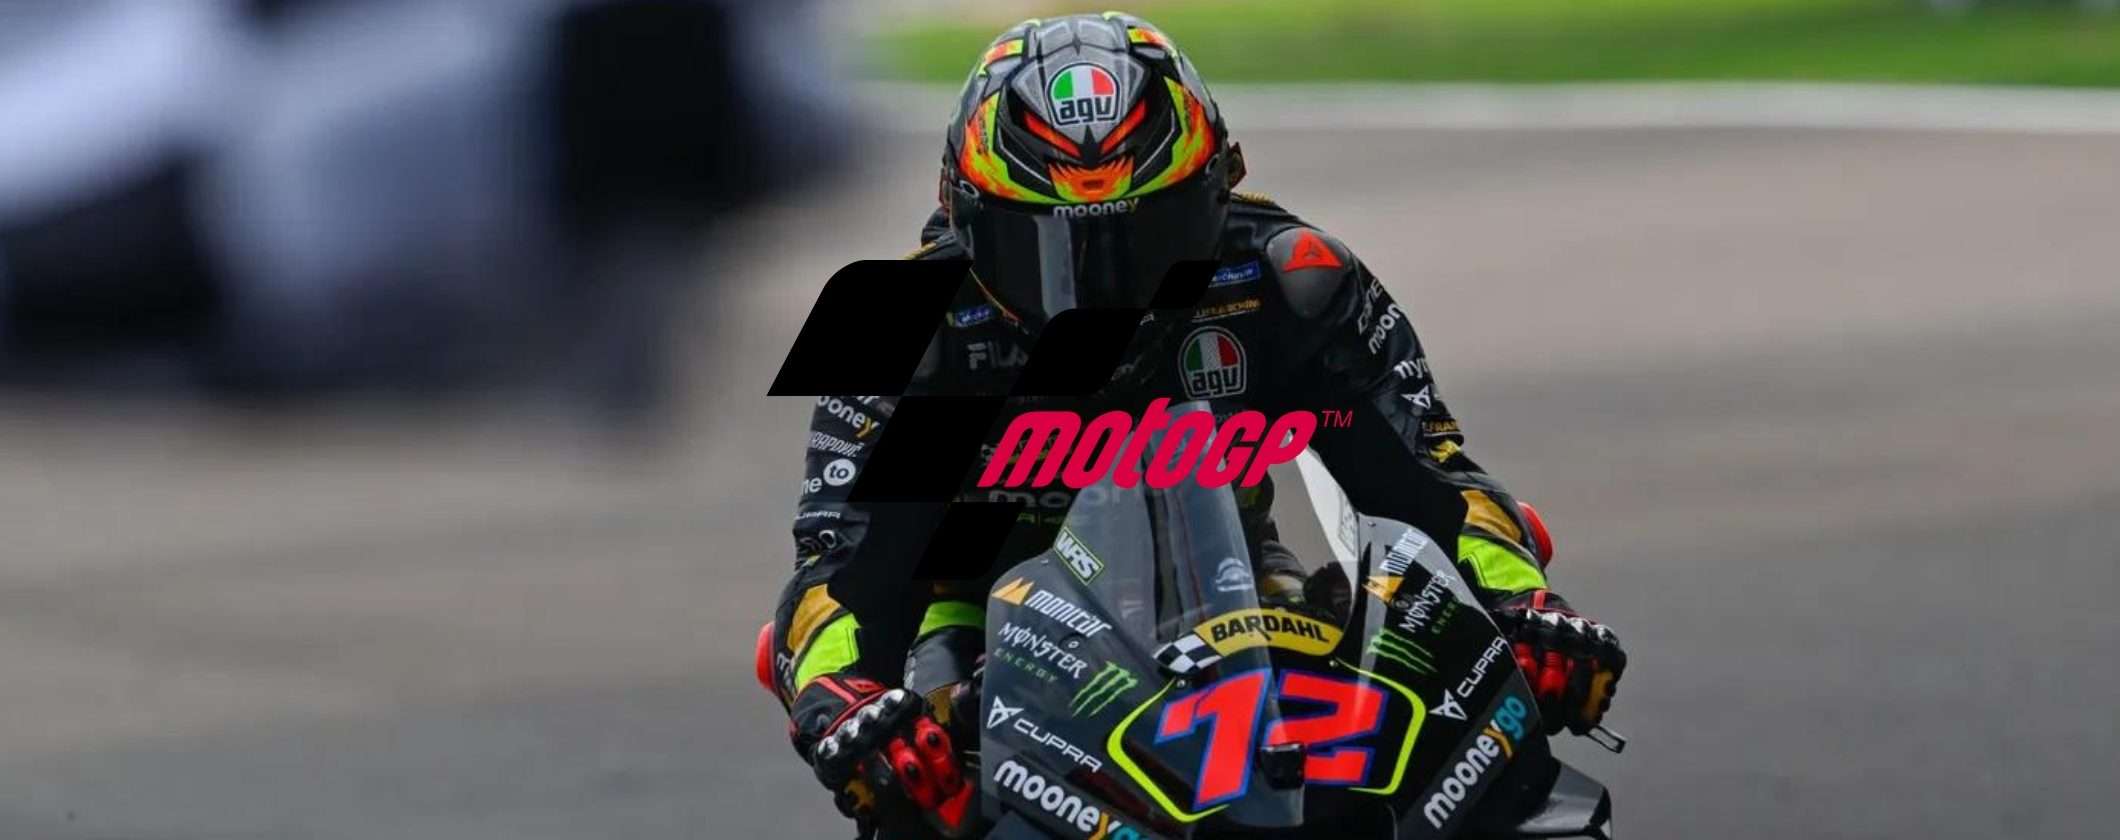 MotoGP del Giappone: calendario e streaming delle gare in diretta